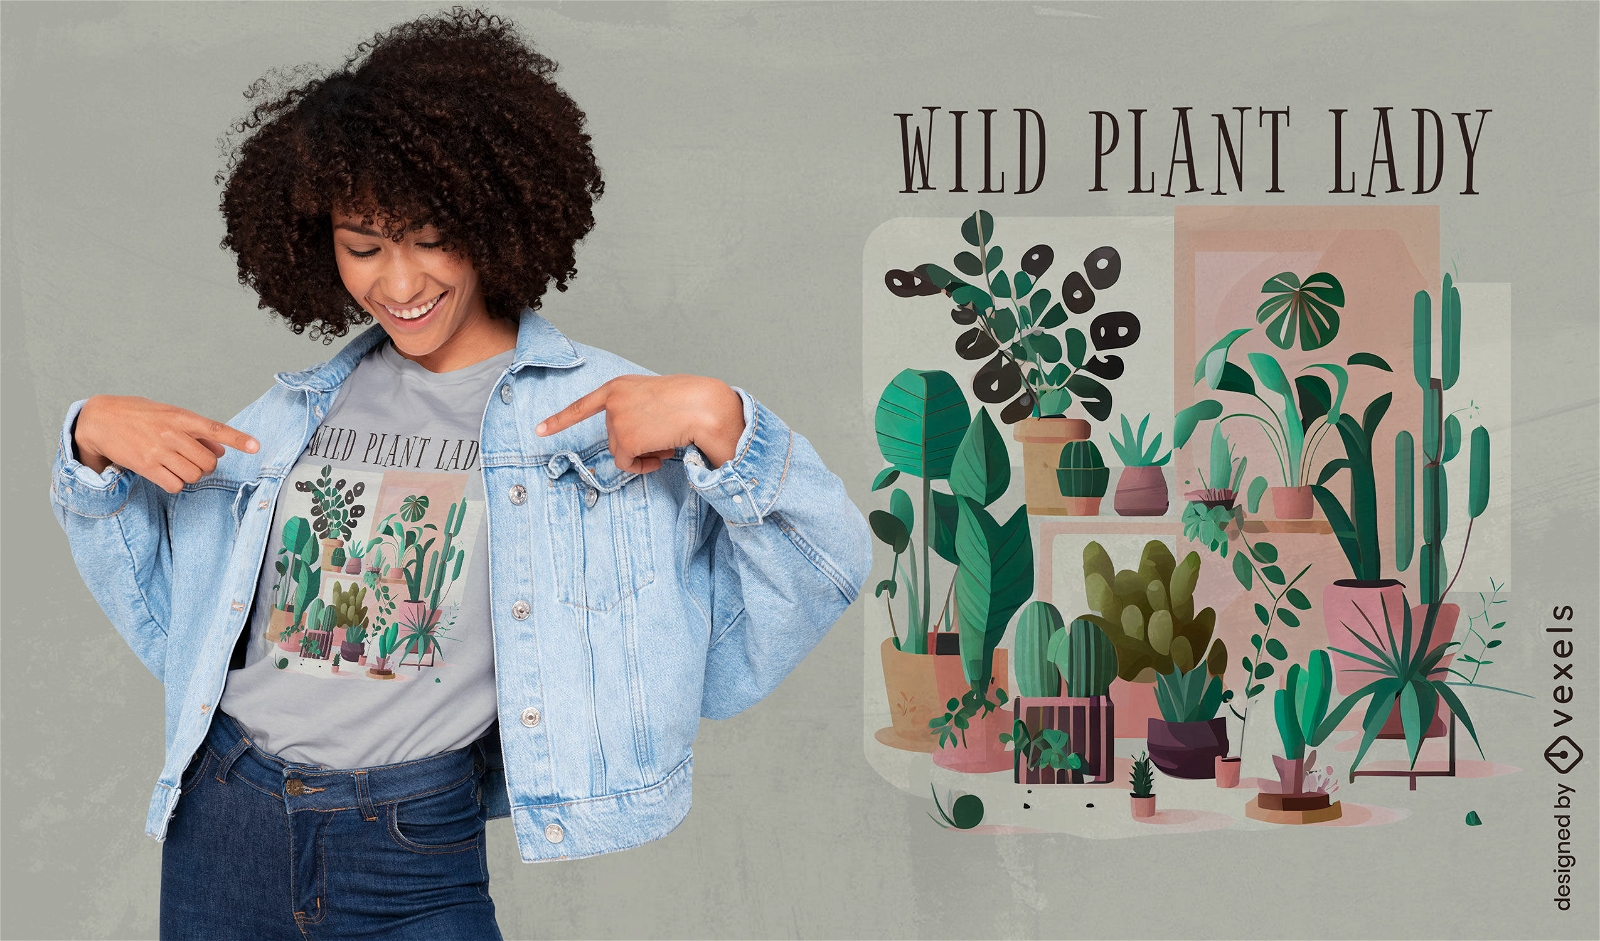 Diseño de camiseta de dama de plantas silvestres botánicas.